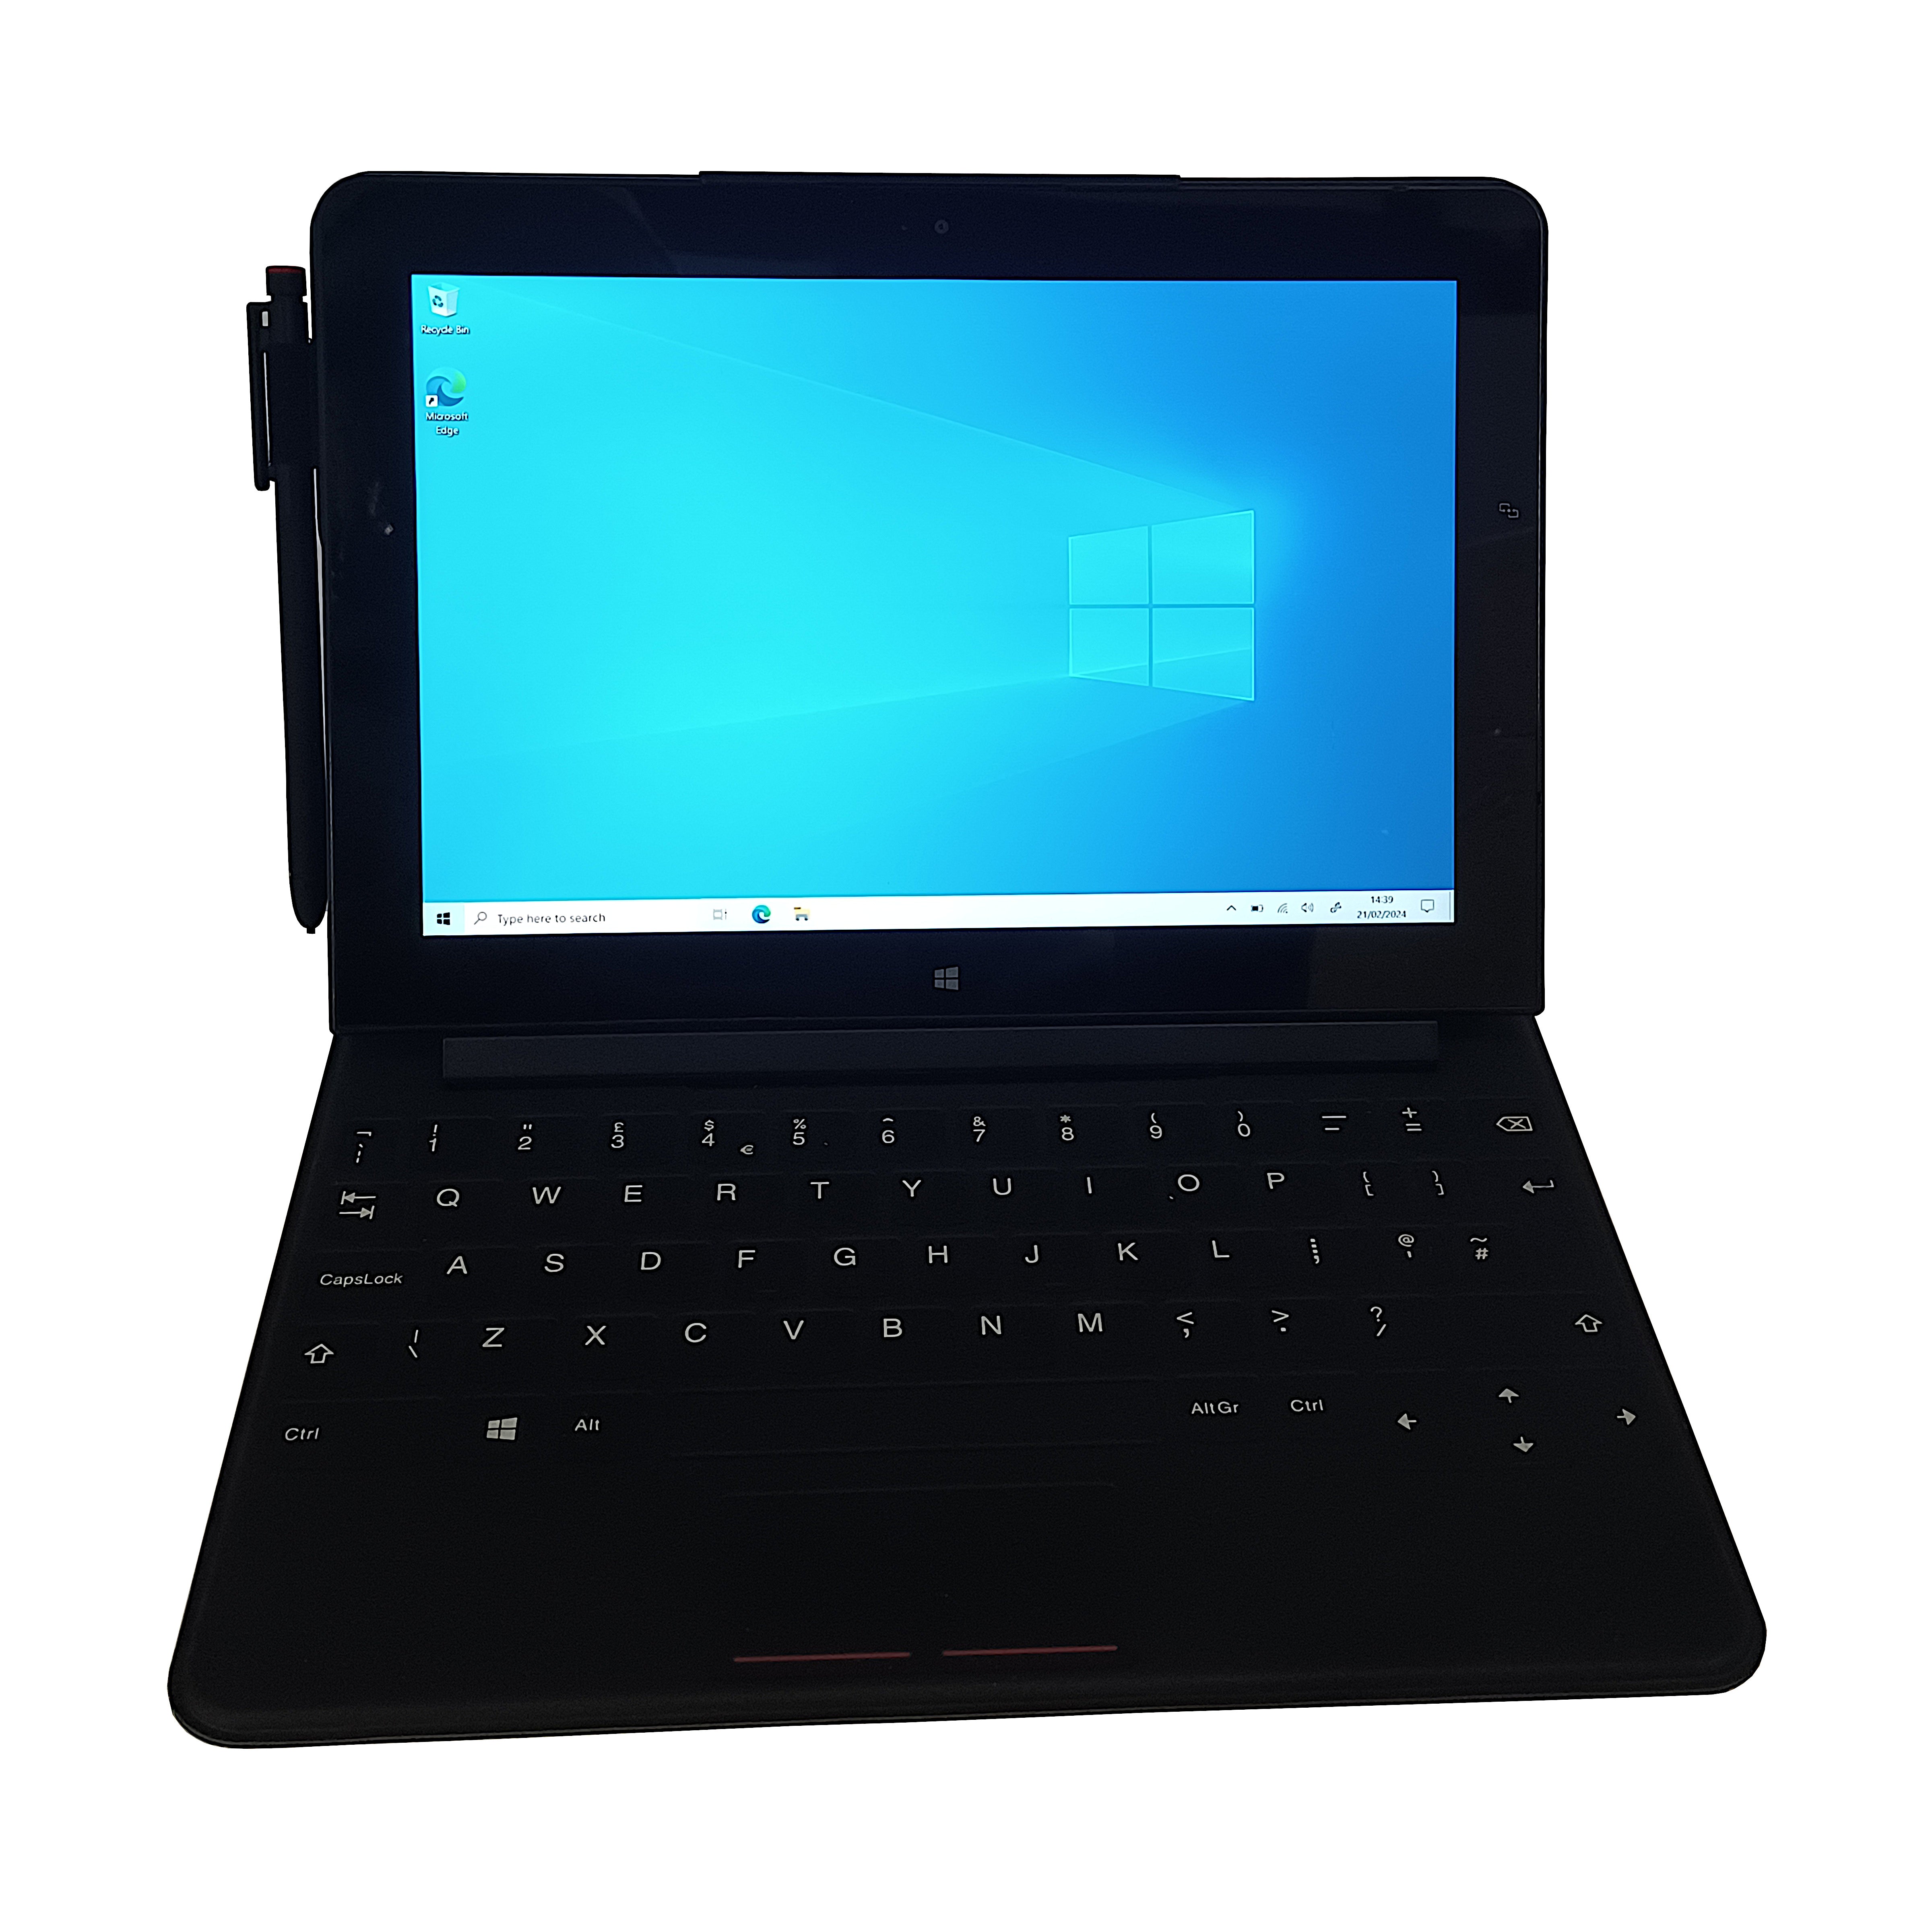 Lenovo Thinkpad 10 Tablet, 10.1" Intel Atom Z3795, 4GB RAM, 64GB SSD